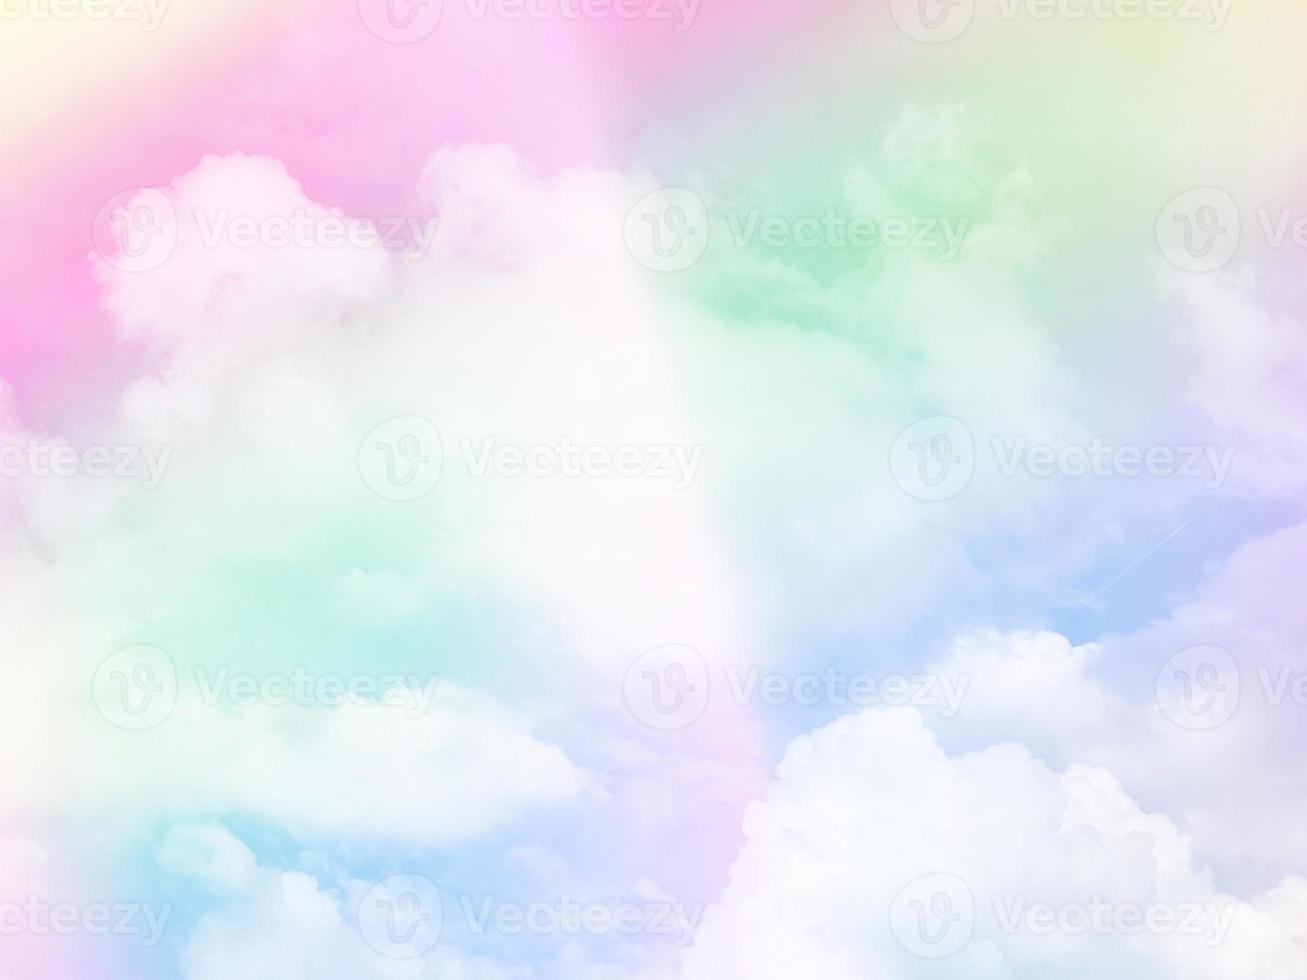 schönheit süß pastellgrün lila bunt mit flauschigen wolken am himmel. mehrfarbiges Regenbogenbild. abstrakte Fantasie wachsendes Licht foto